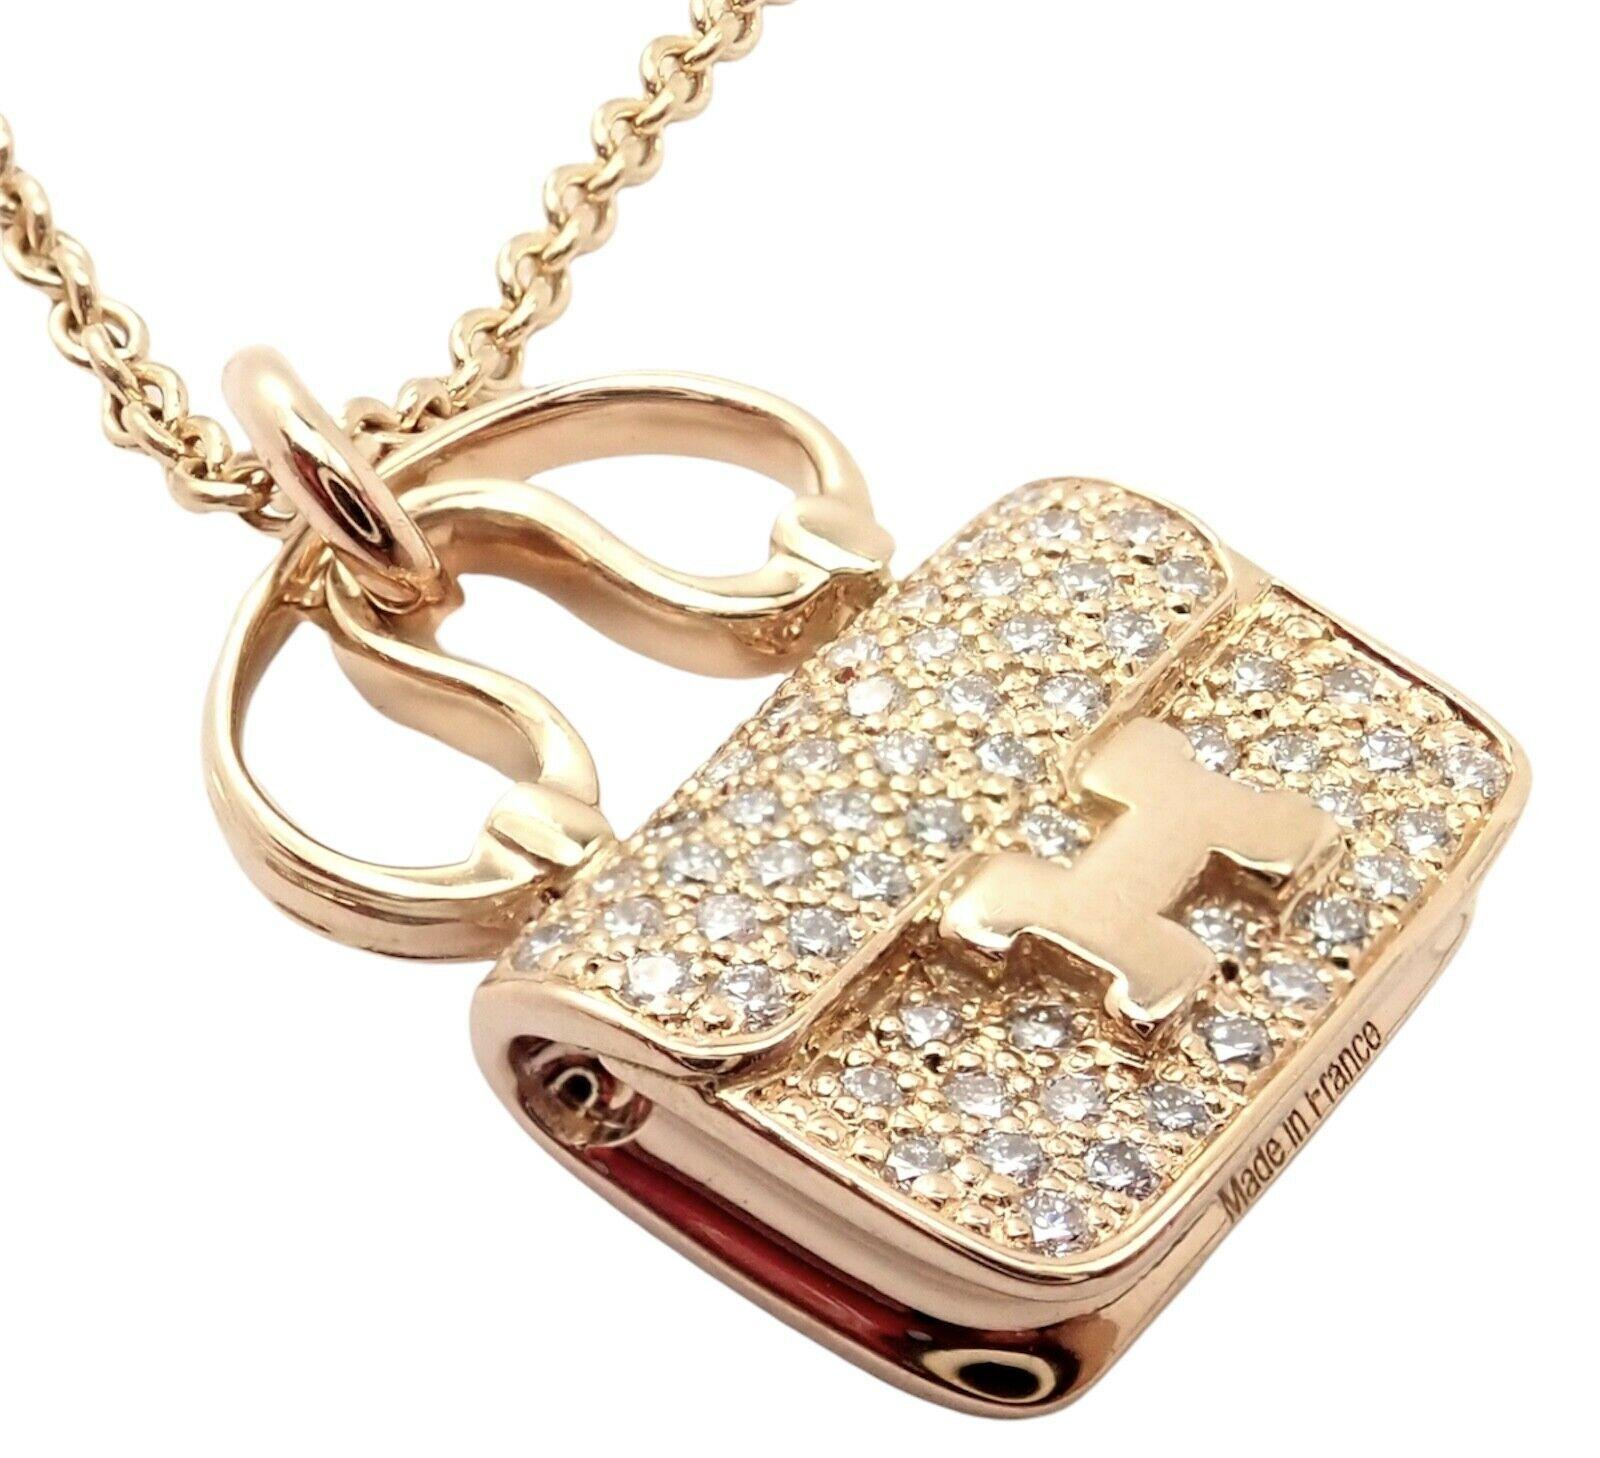 18k Rose Gold Diamond Constance Amulette Halskette von Hermes. 
Mit 65 Diamanten im Brillantschliff, Reinheit VVS1 und Farbe G, Gesamtgewicht ca. 0,29ct
Einzelheiten: 
Kette Länge: 15.75